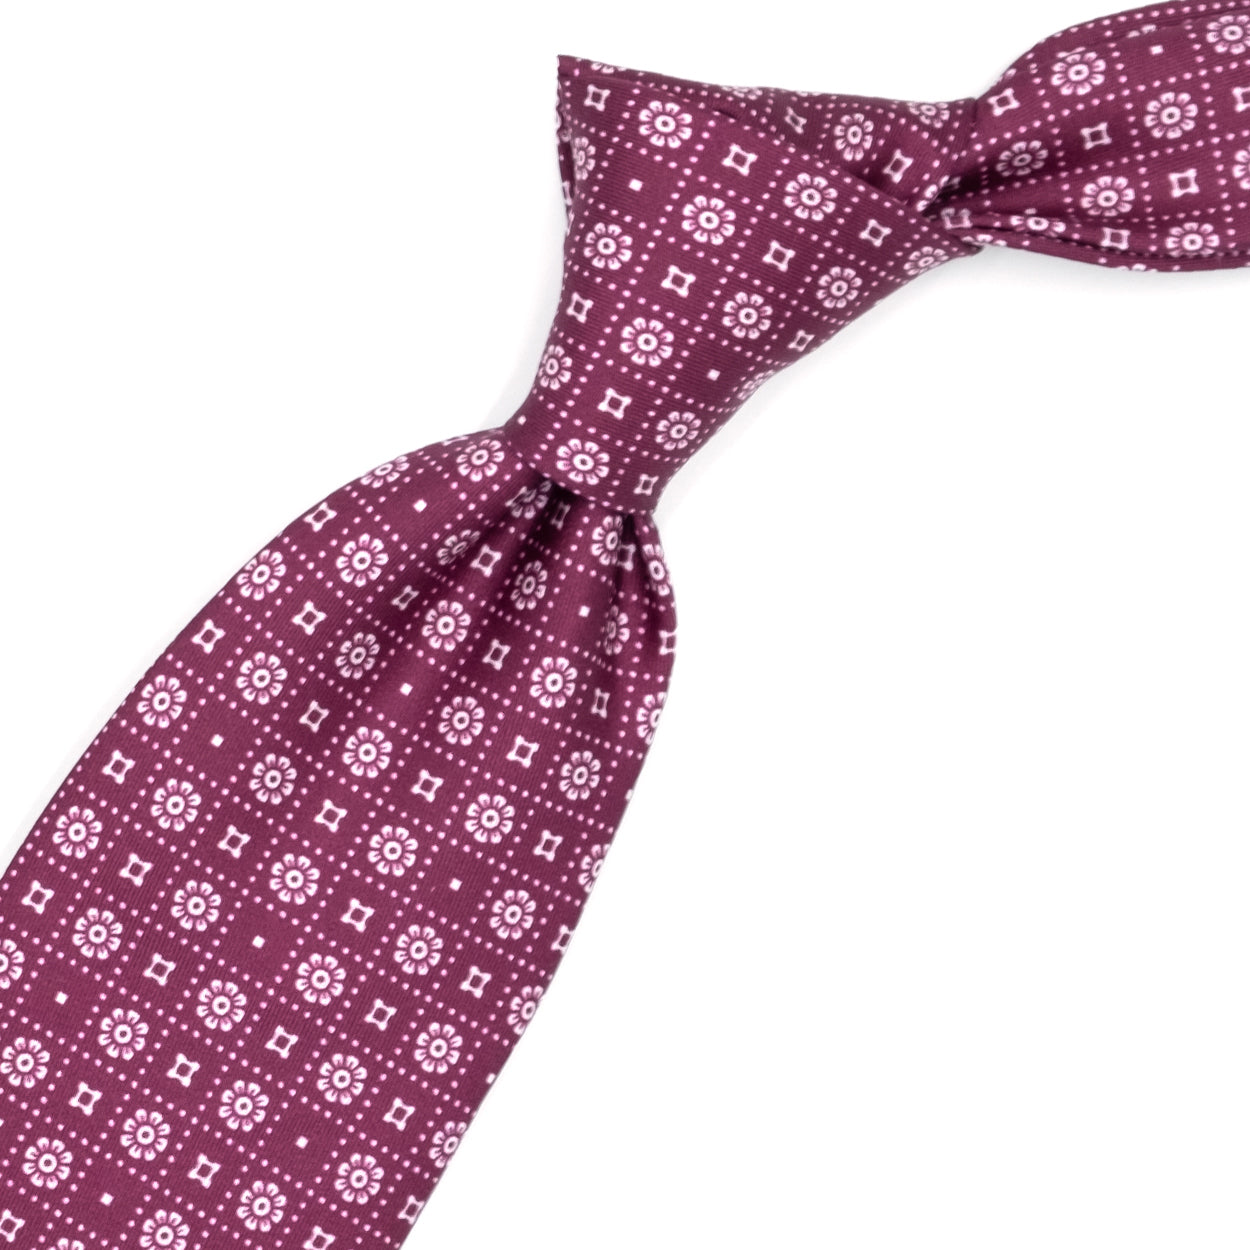 Cravatta rossa con fiorellini, quadratini e puntini bianchi